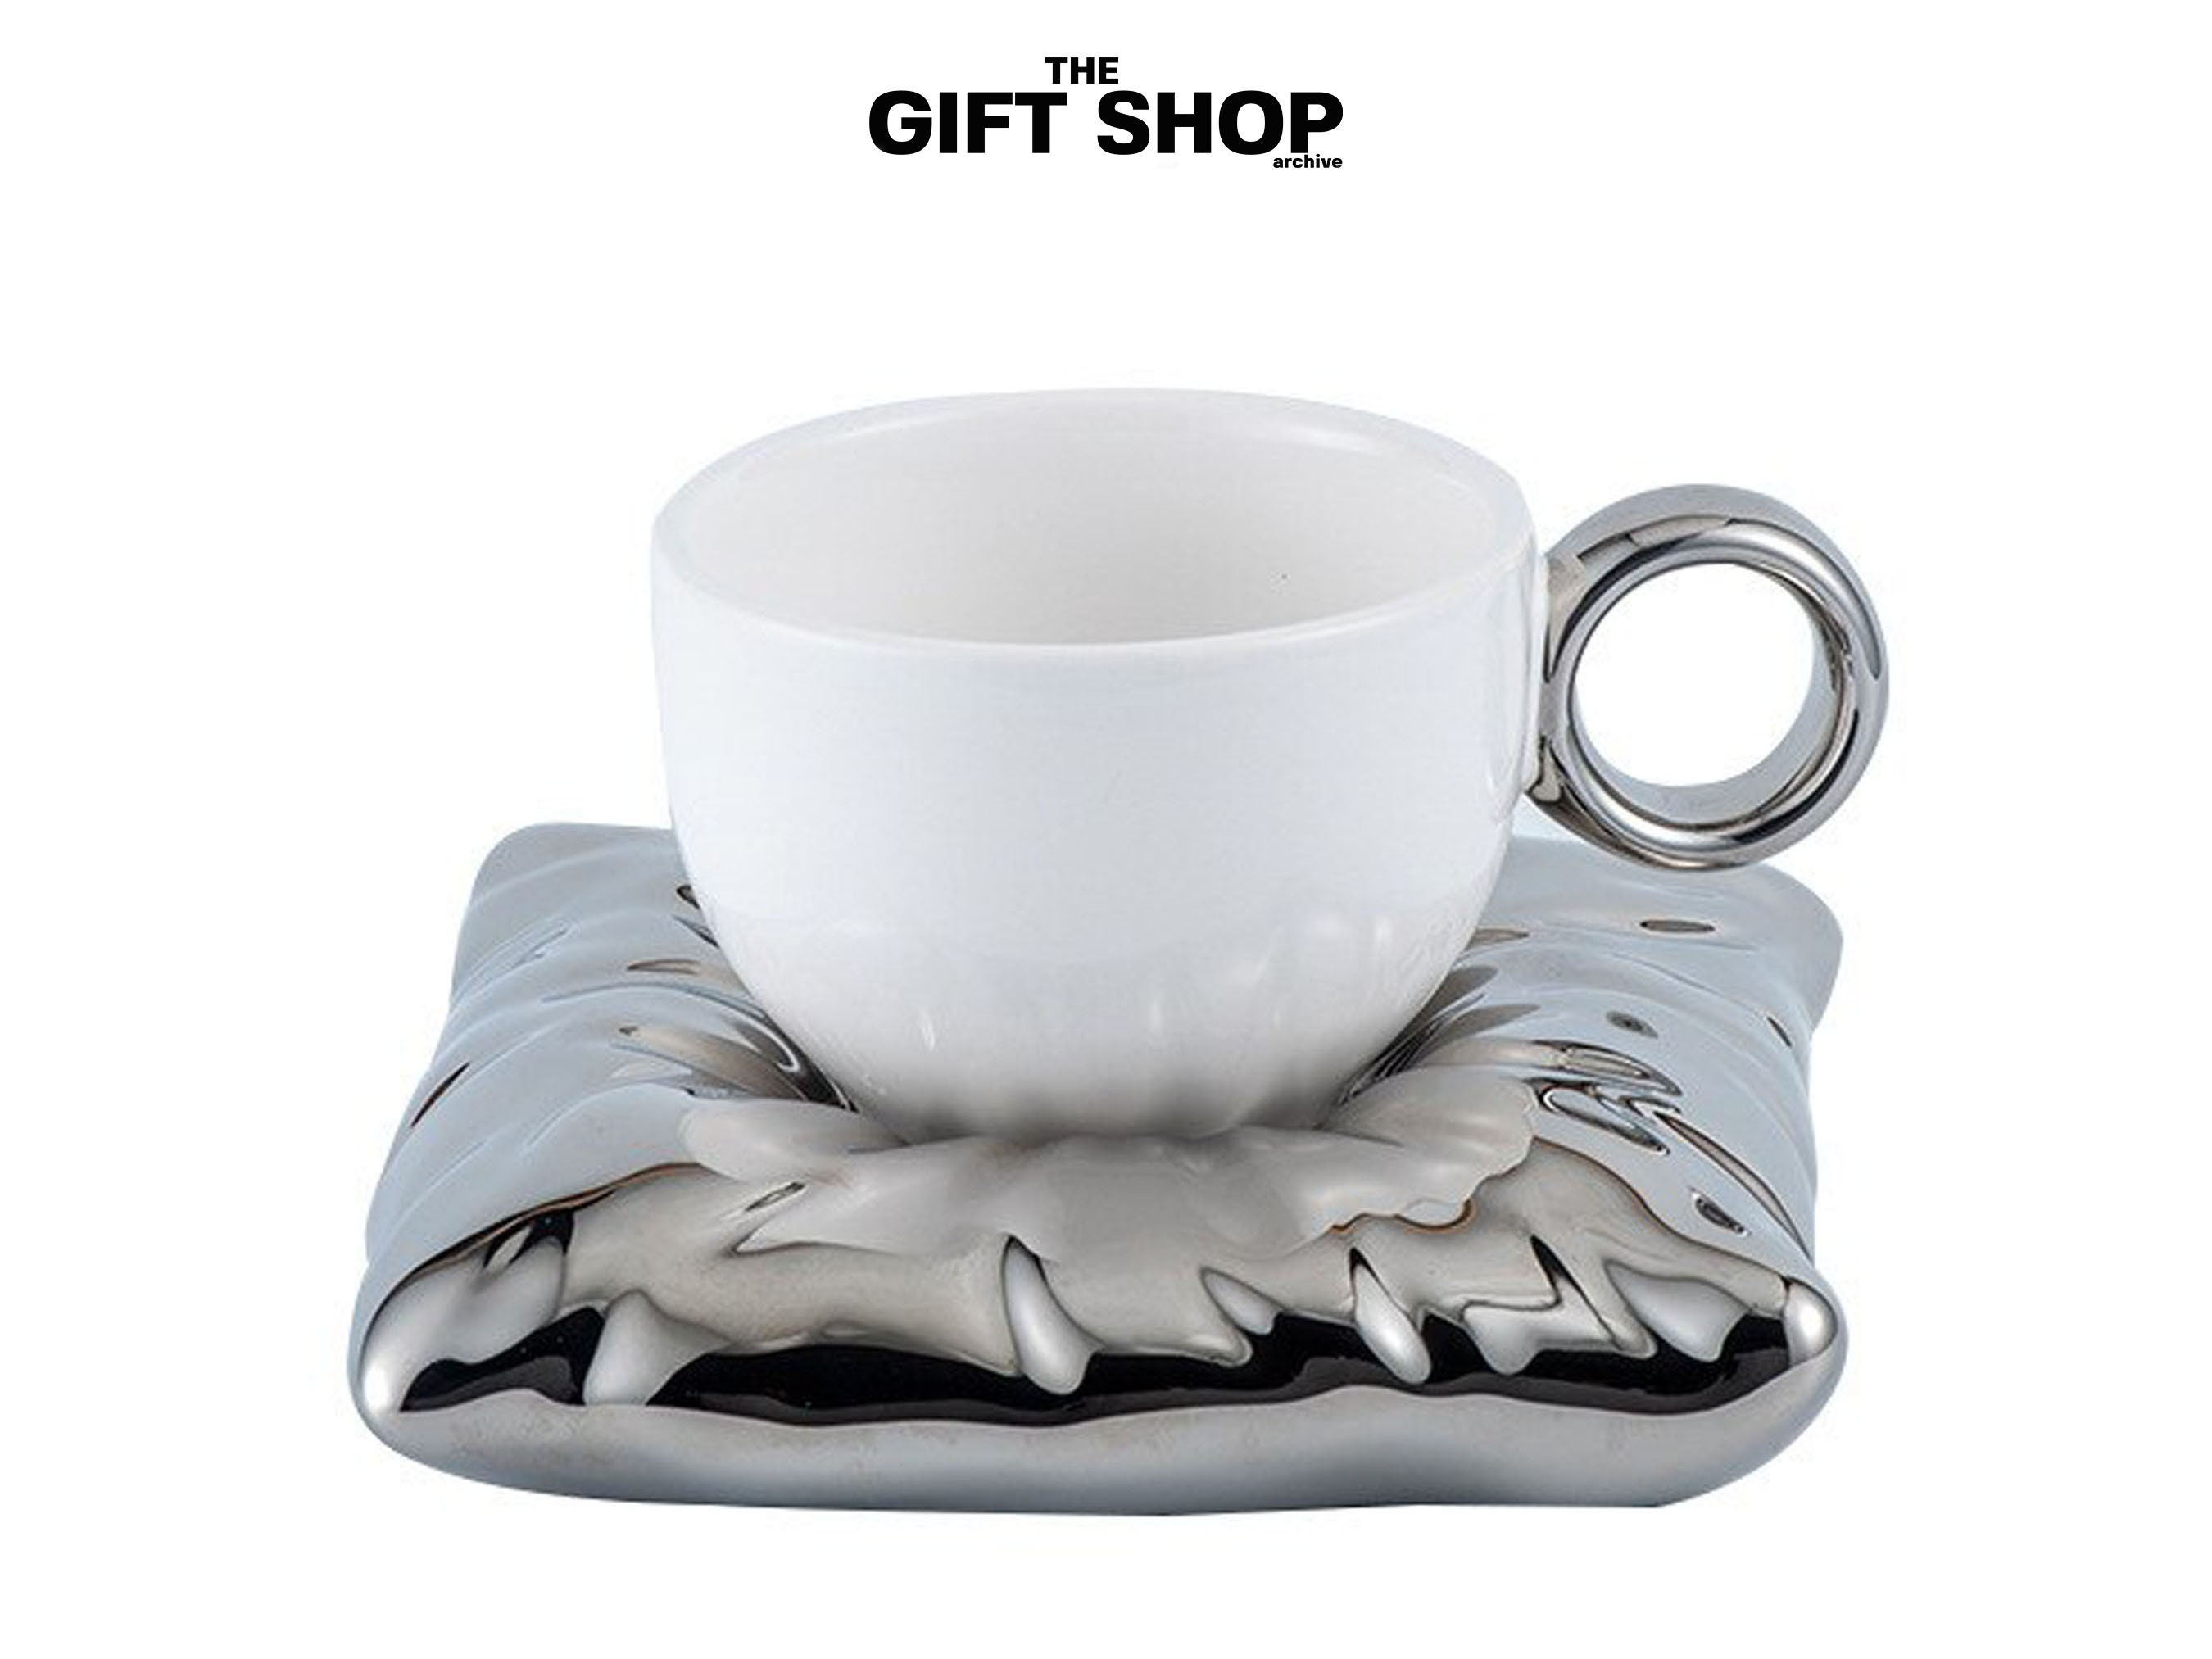 CafePress - One Cat Short Of Crazy - 11 oz Ceramic Mug - Novelty Coffee Tea  Cup